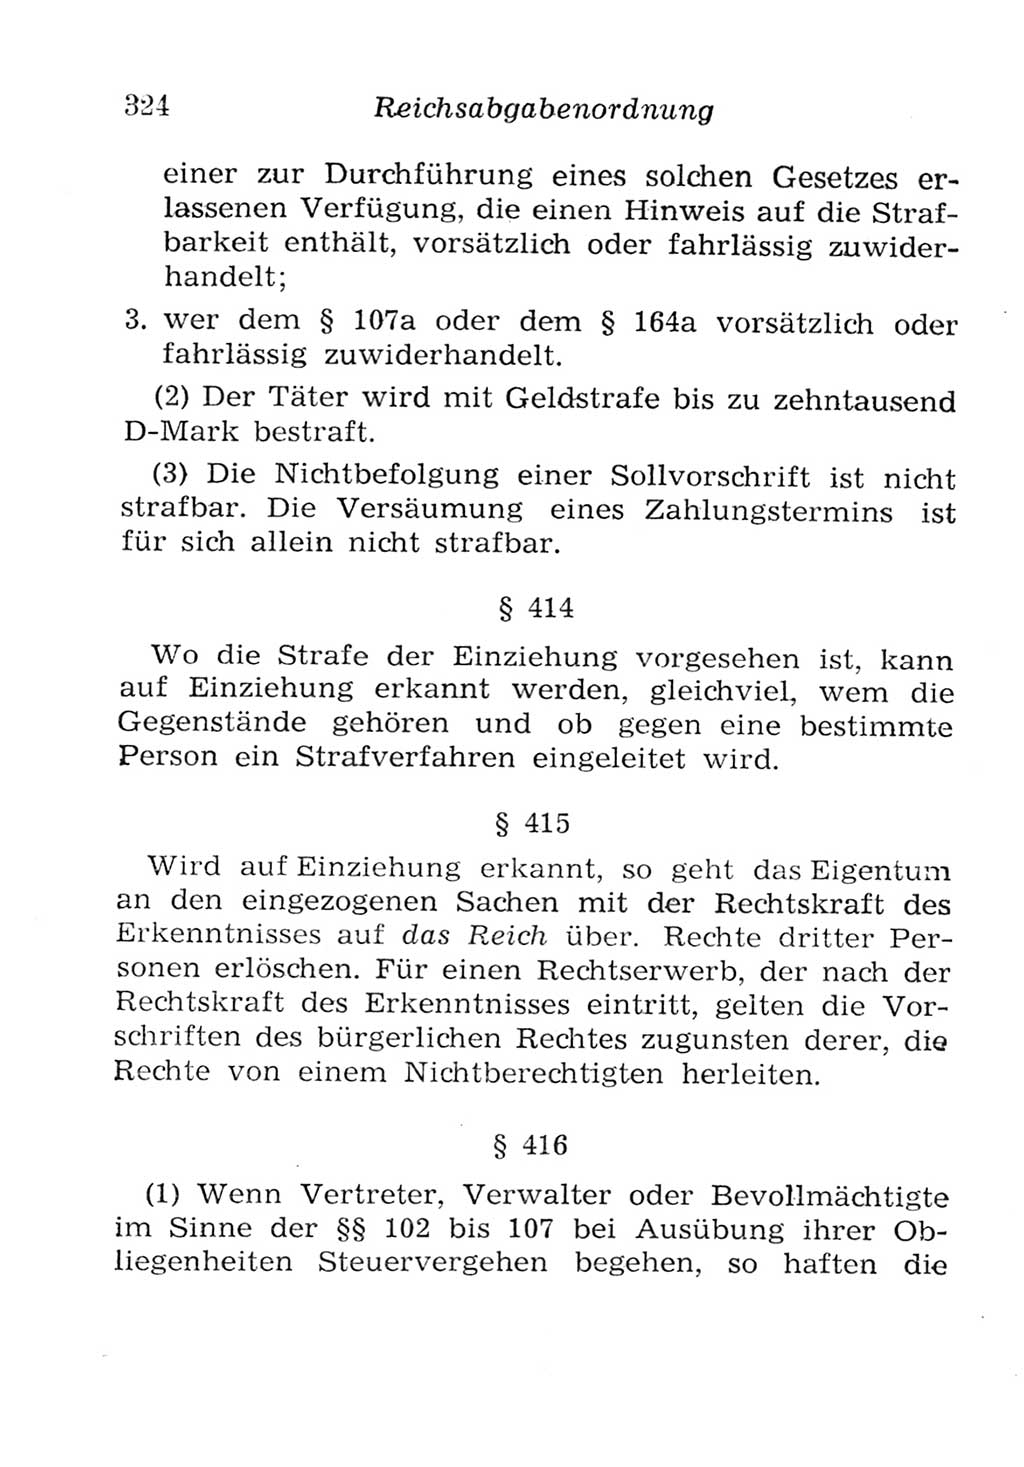 Strafgesetzbuch (StGB) und andere Strafgesetze [Deutsche Demokratische Republik (DDR)] 1957, Seite 324 (StGB Strafges. DDR 1957, S. 324)